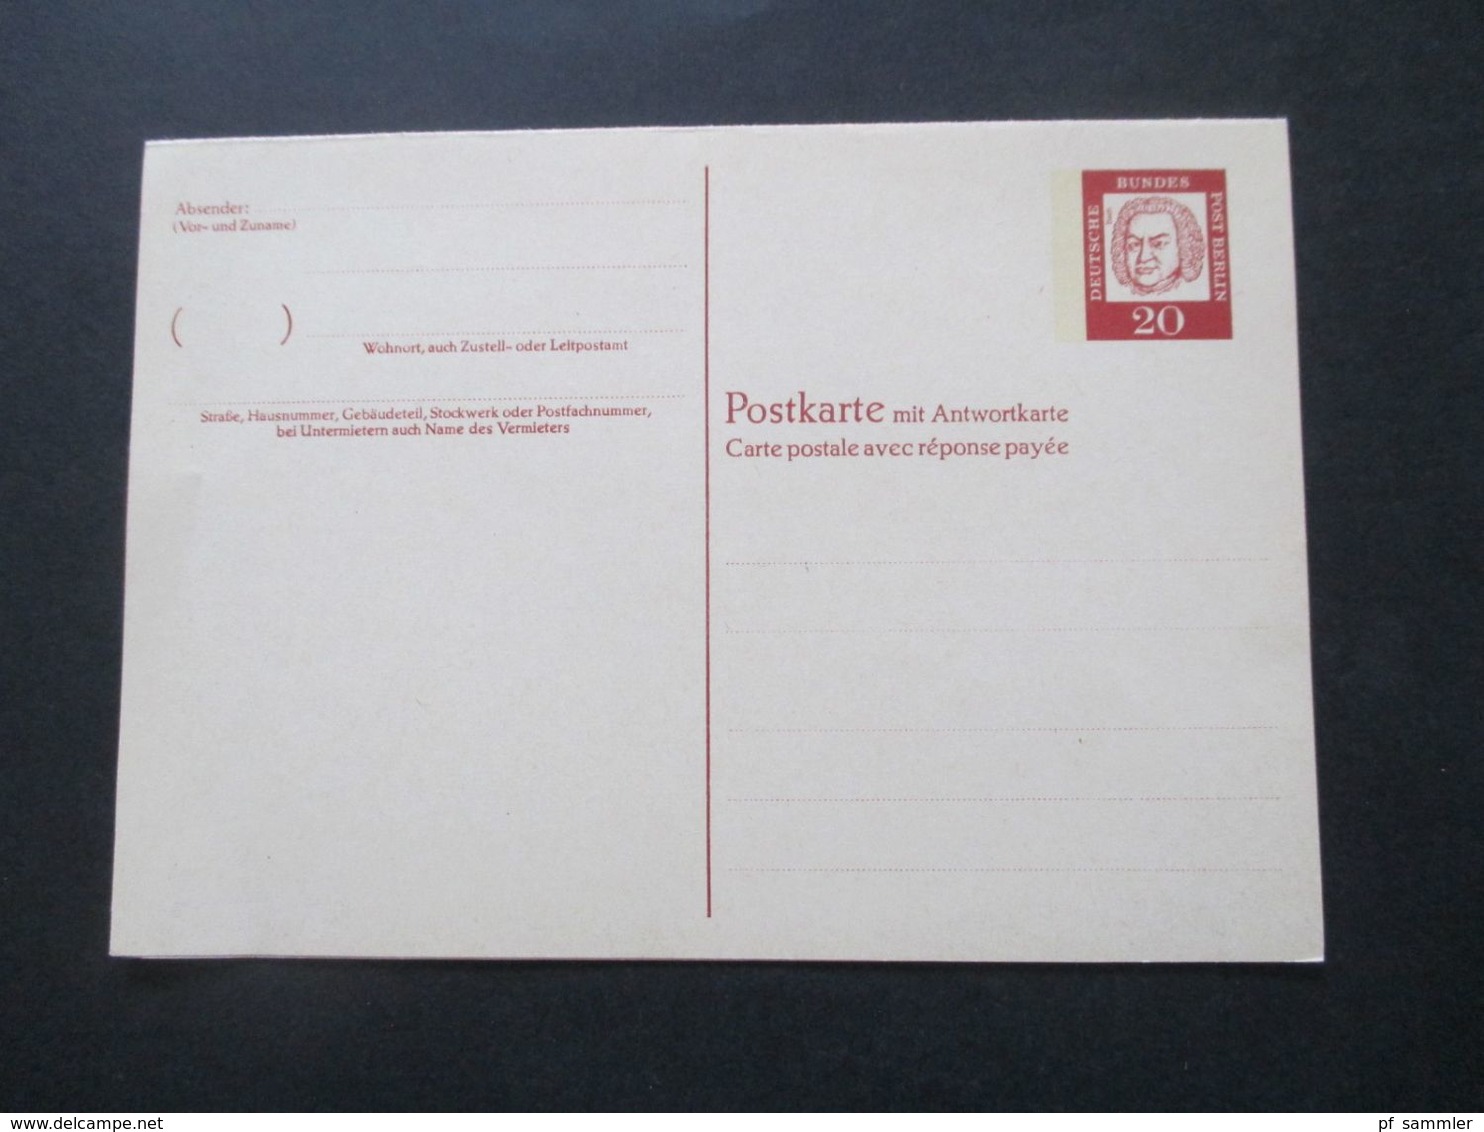 Berlin 1961 Bedeutende Deutsche Ganzsachen / Doppelkarte P 54 Und P 55 Ungebraucht - Covers & Documents